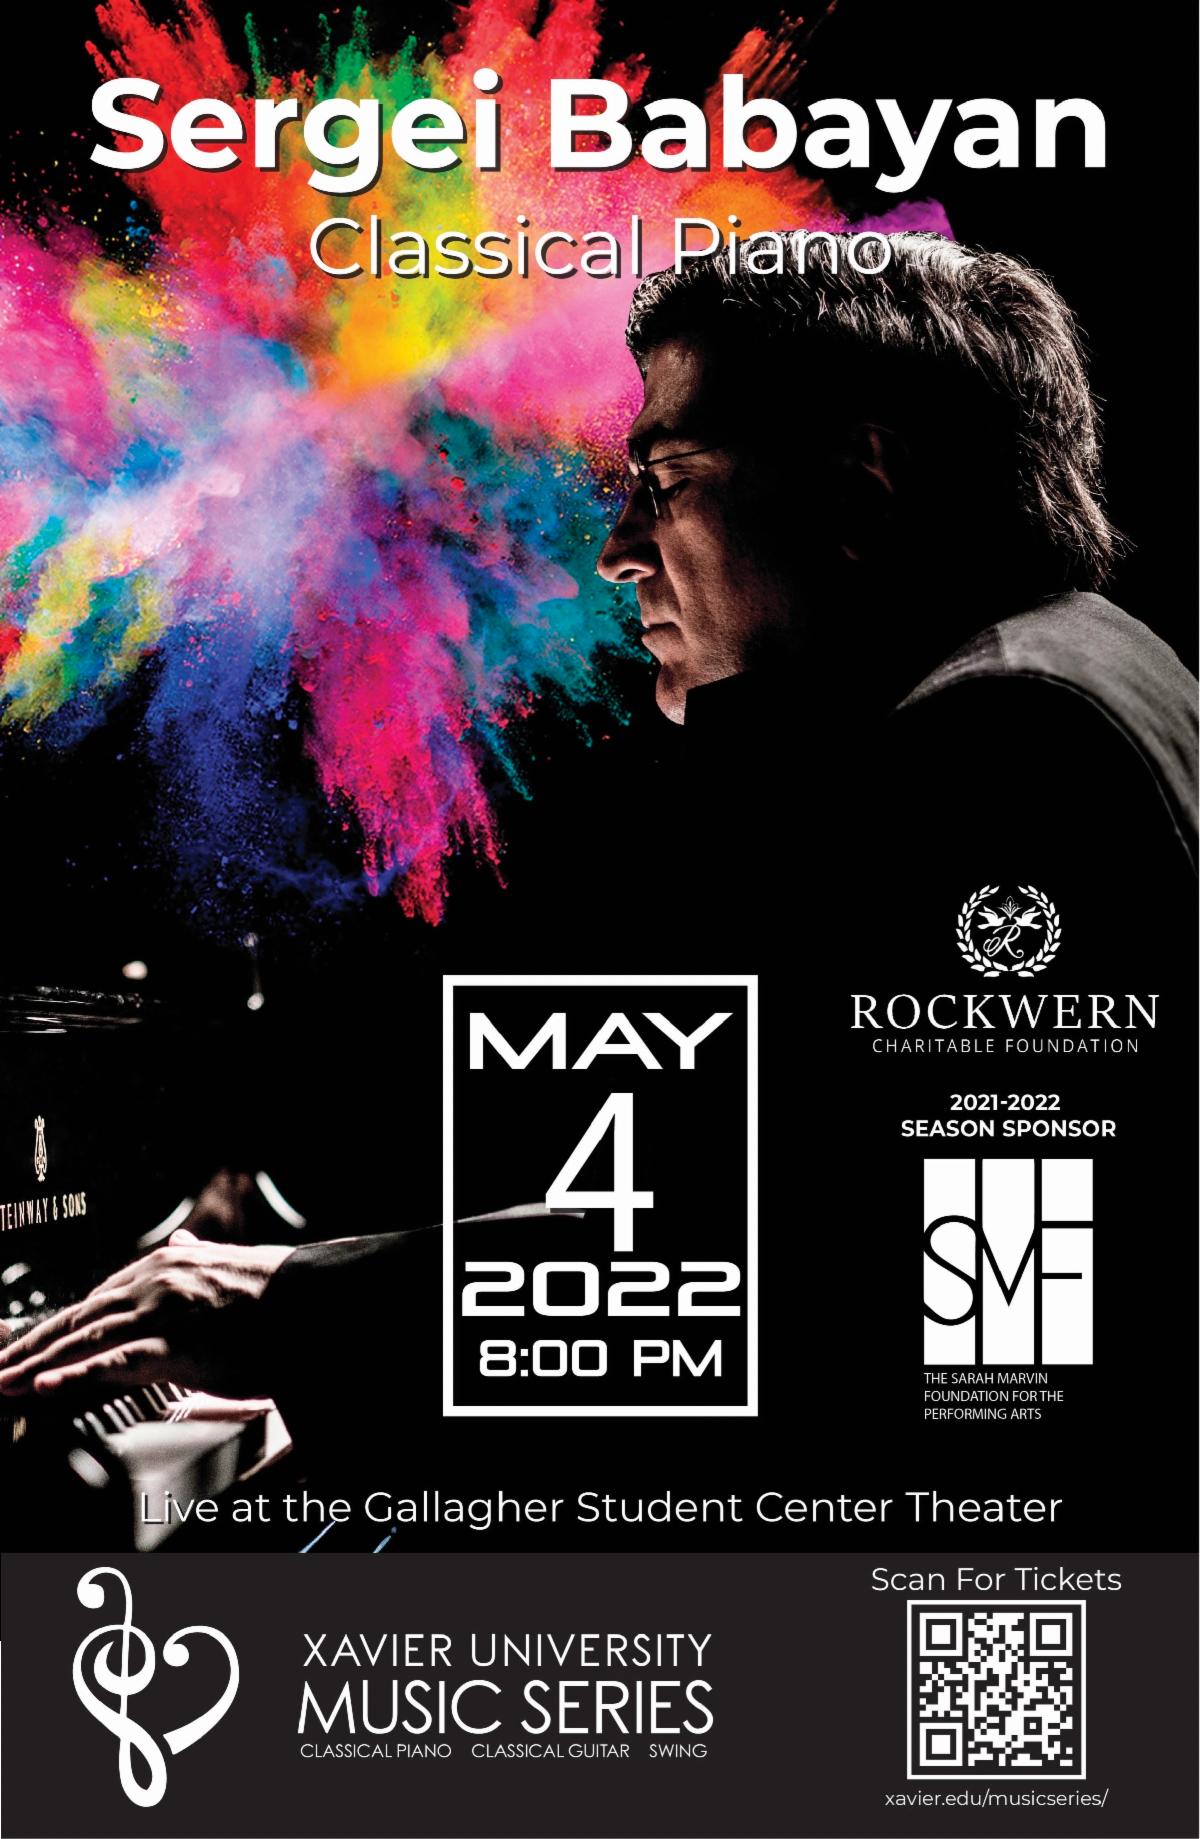 Xavier University Music Series: May 2022